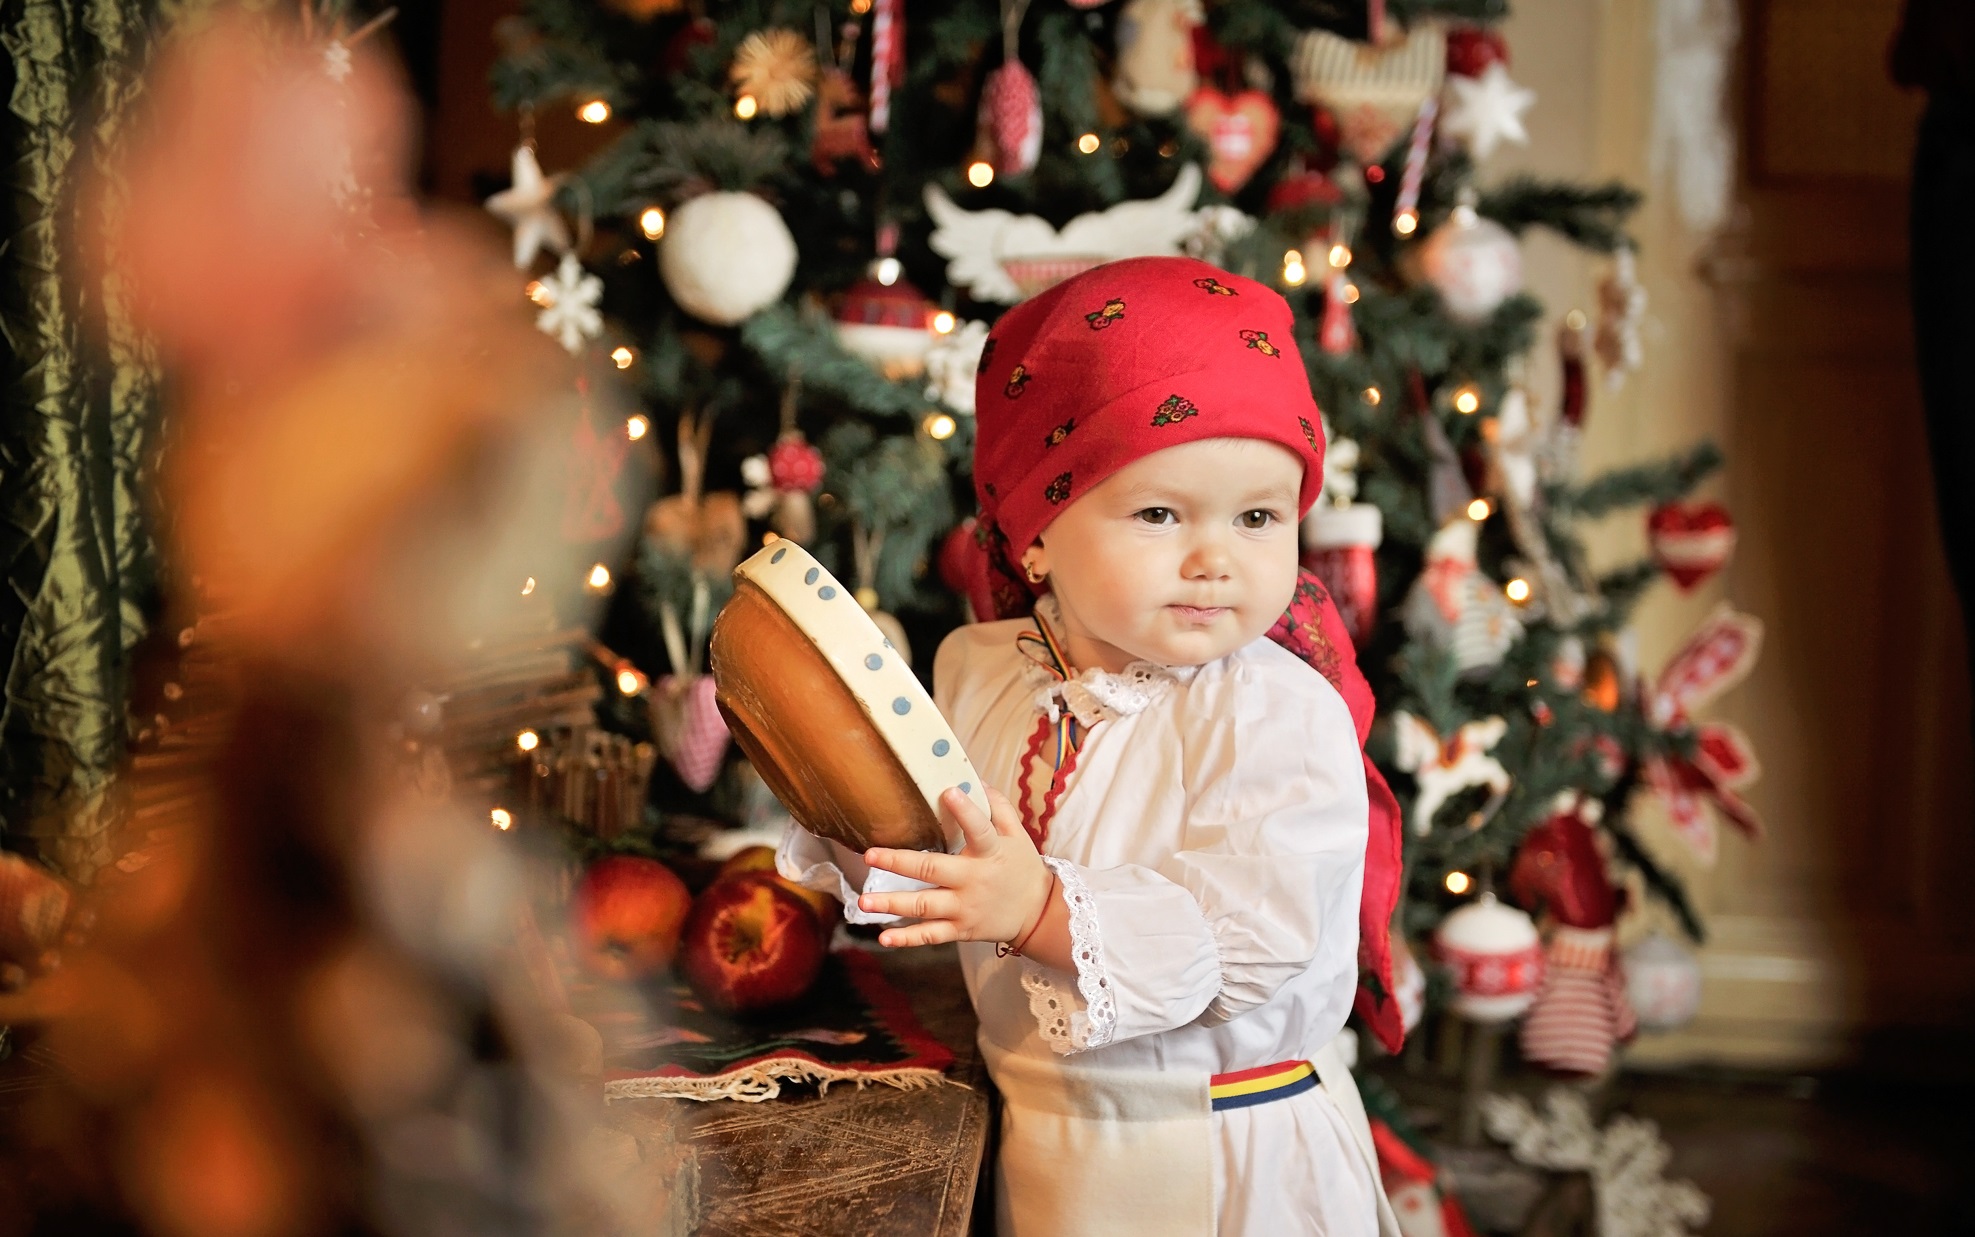 Acasa de Craciun… De Crăciun, să ne deschidem și inimile nu numai cadourile